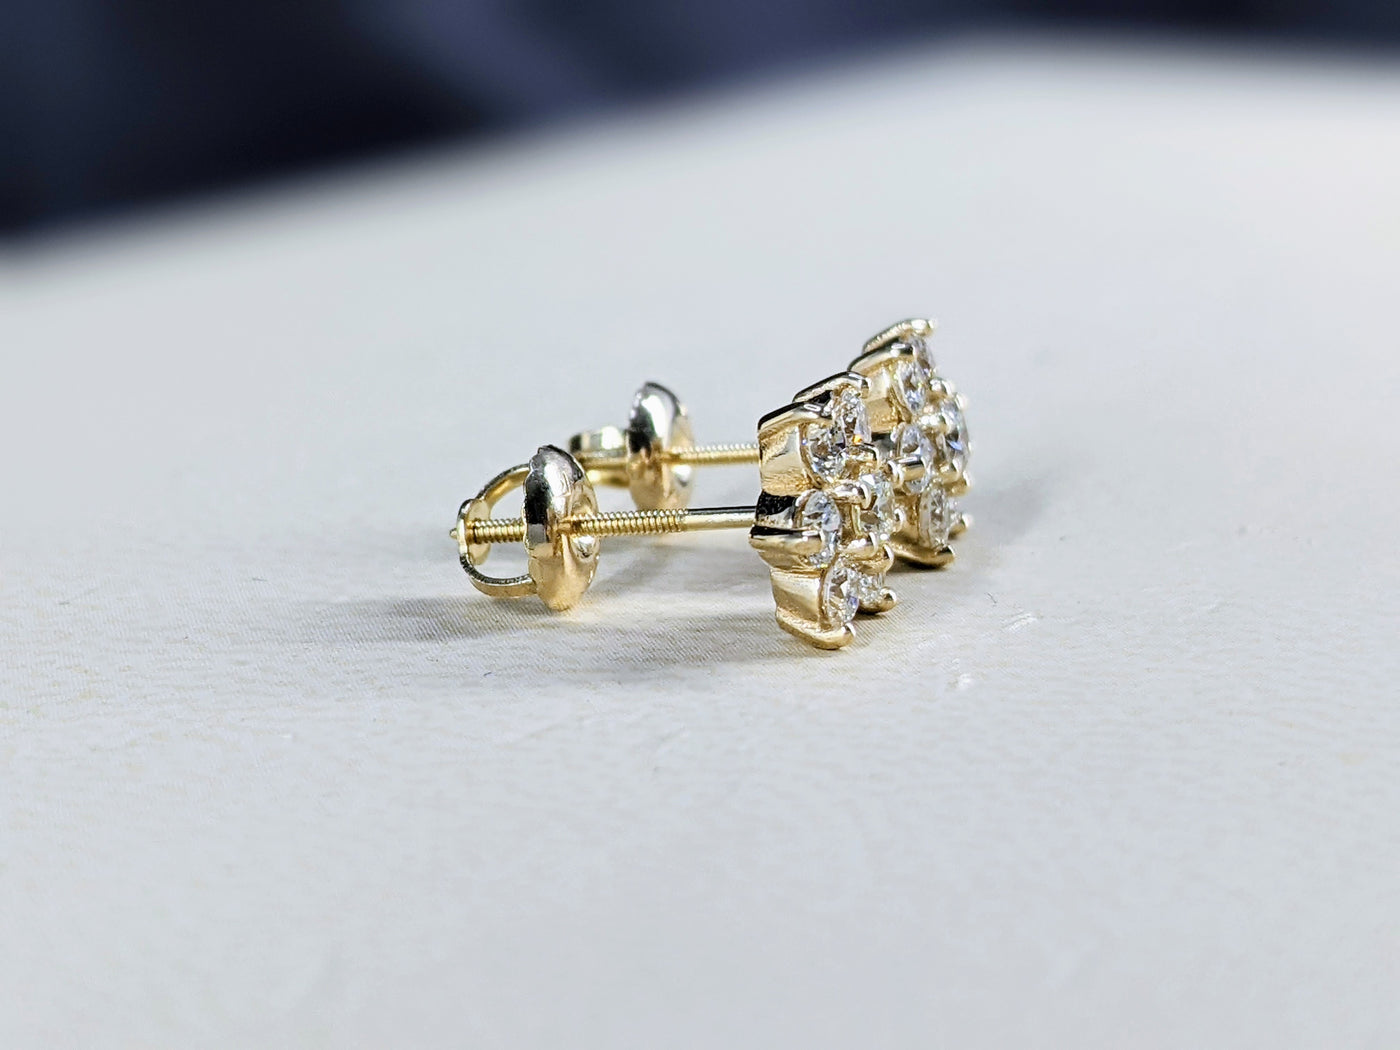 0.90 Ct. Tw. Flower Design Diamond Earrings